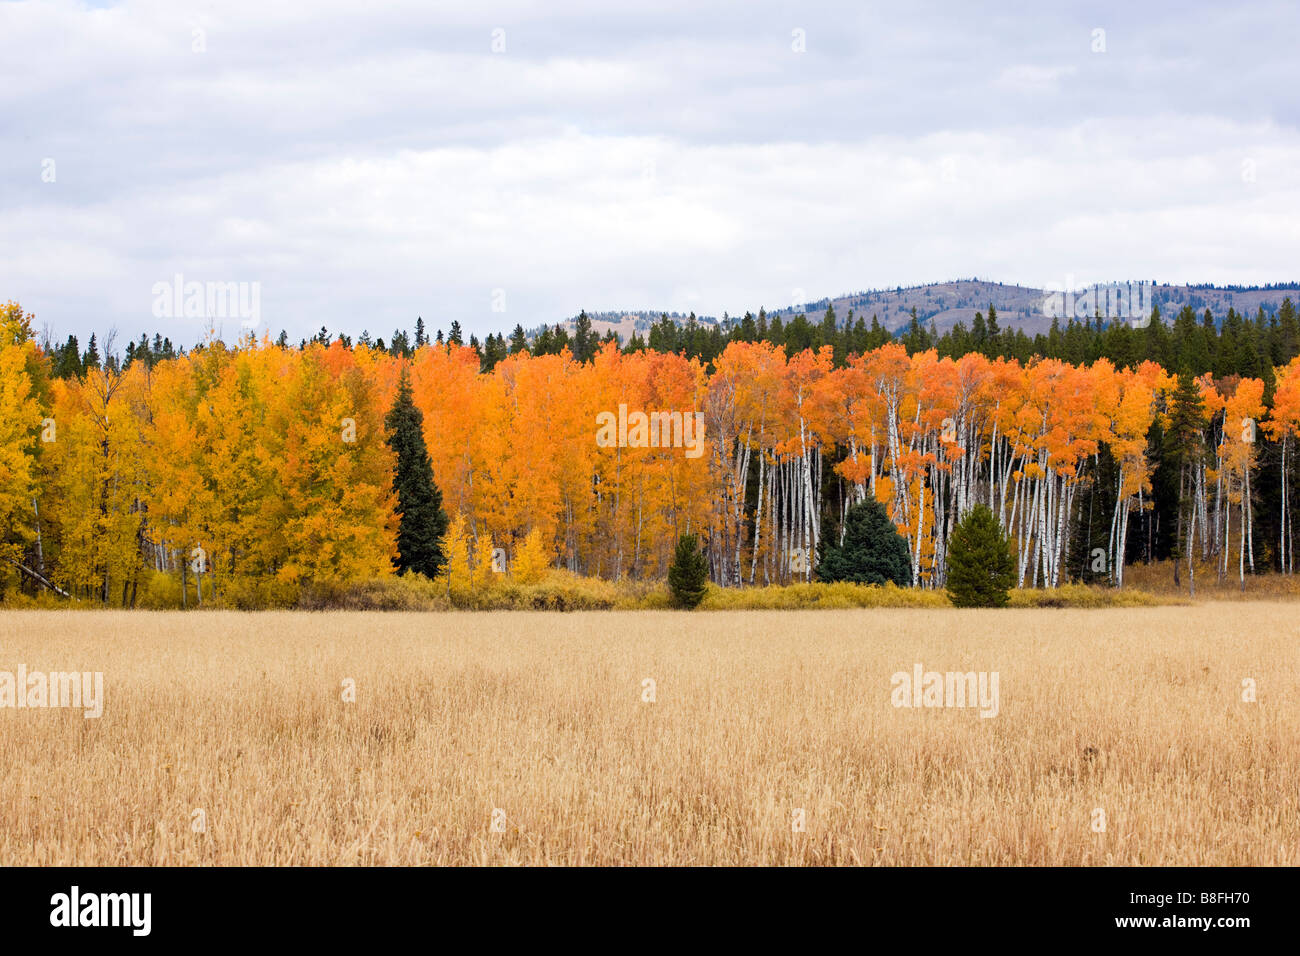 Aspen alberi dorate in autunno il colore vicino a Rt 89 287 e Arizona Island Grand Teton National Park Wyoming USA Foto Stock